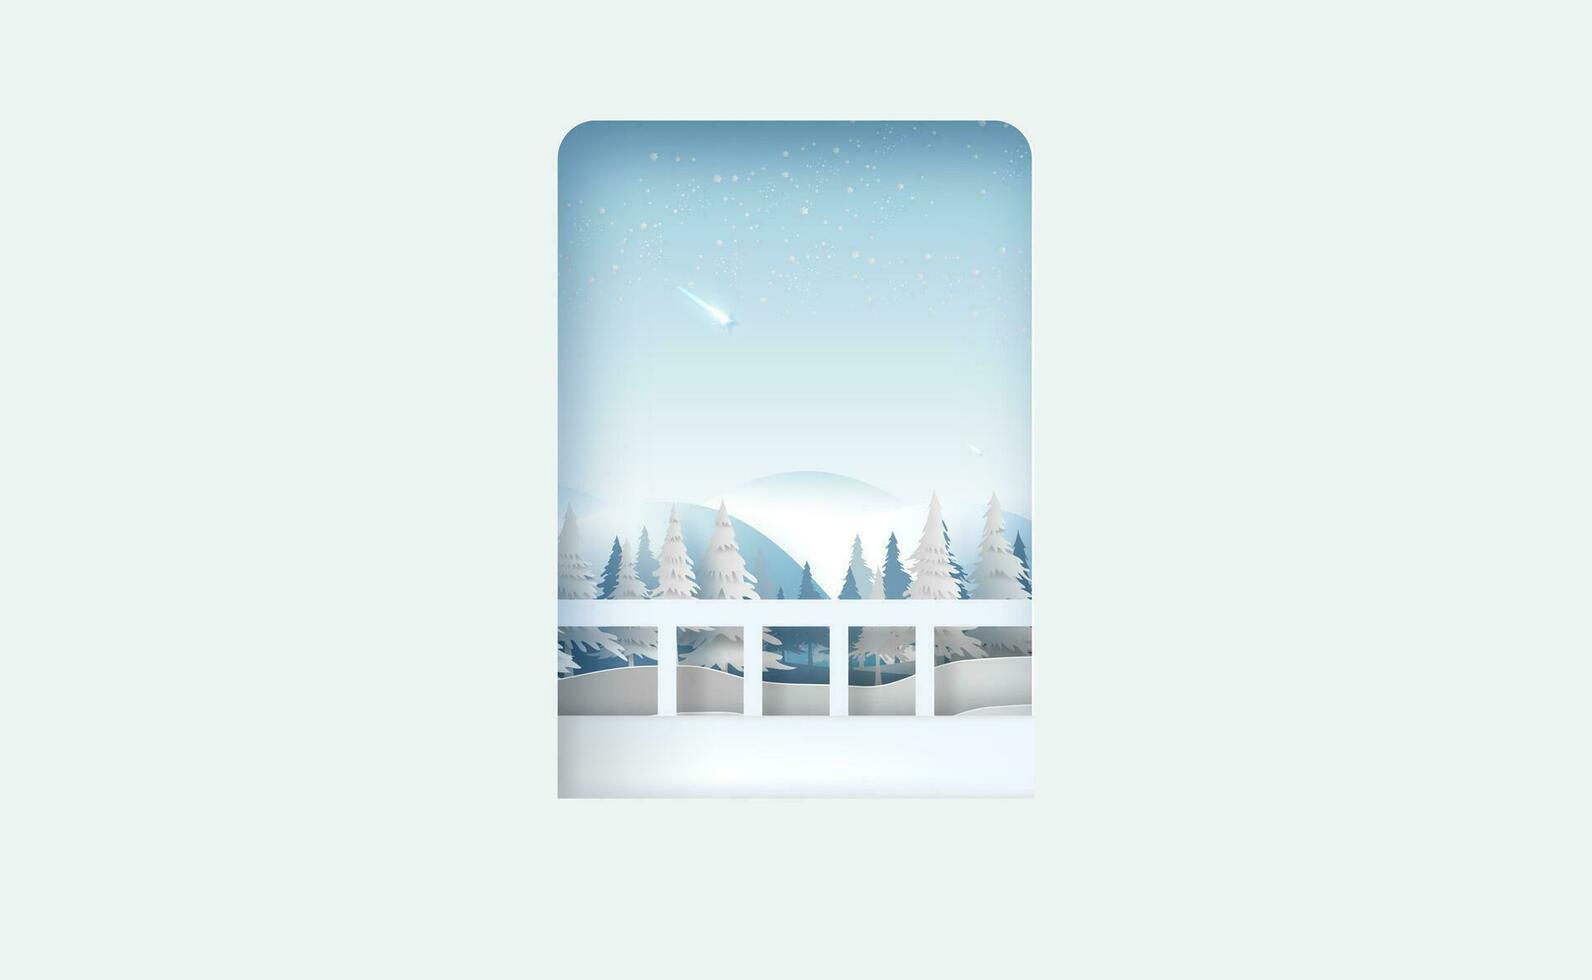 vue à la recherche en dehors porte à paysage voir Montagne et forêt pour hiver saison.joyeux Noël et content Nouveau année dans ciel avec tournage étoiles. flocons de neige sur bleu Contexte papier Couper et artisanat style. vecteur